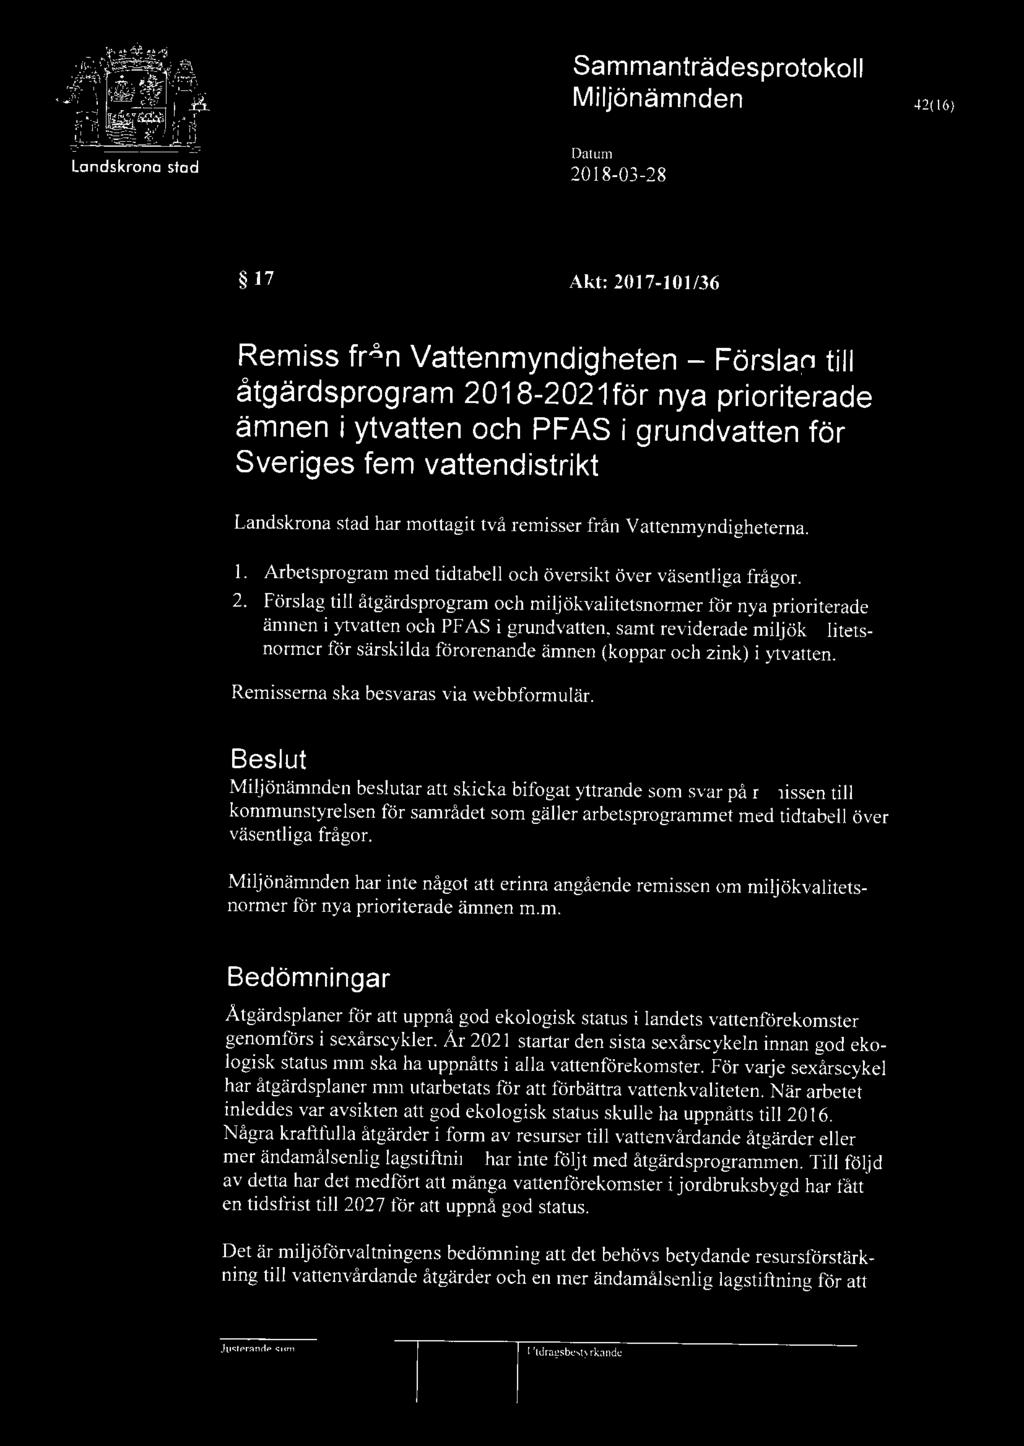 42( 16) La ndskrona stod 17 Akt: 2017-101/36 Remiss från Vattenmyndigheten - Förslag till åtgärdsprogram 2018-2021för nya prioriterade ämnen i ytvatten och PFAS i grundvatten för Sveriges fem